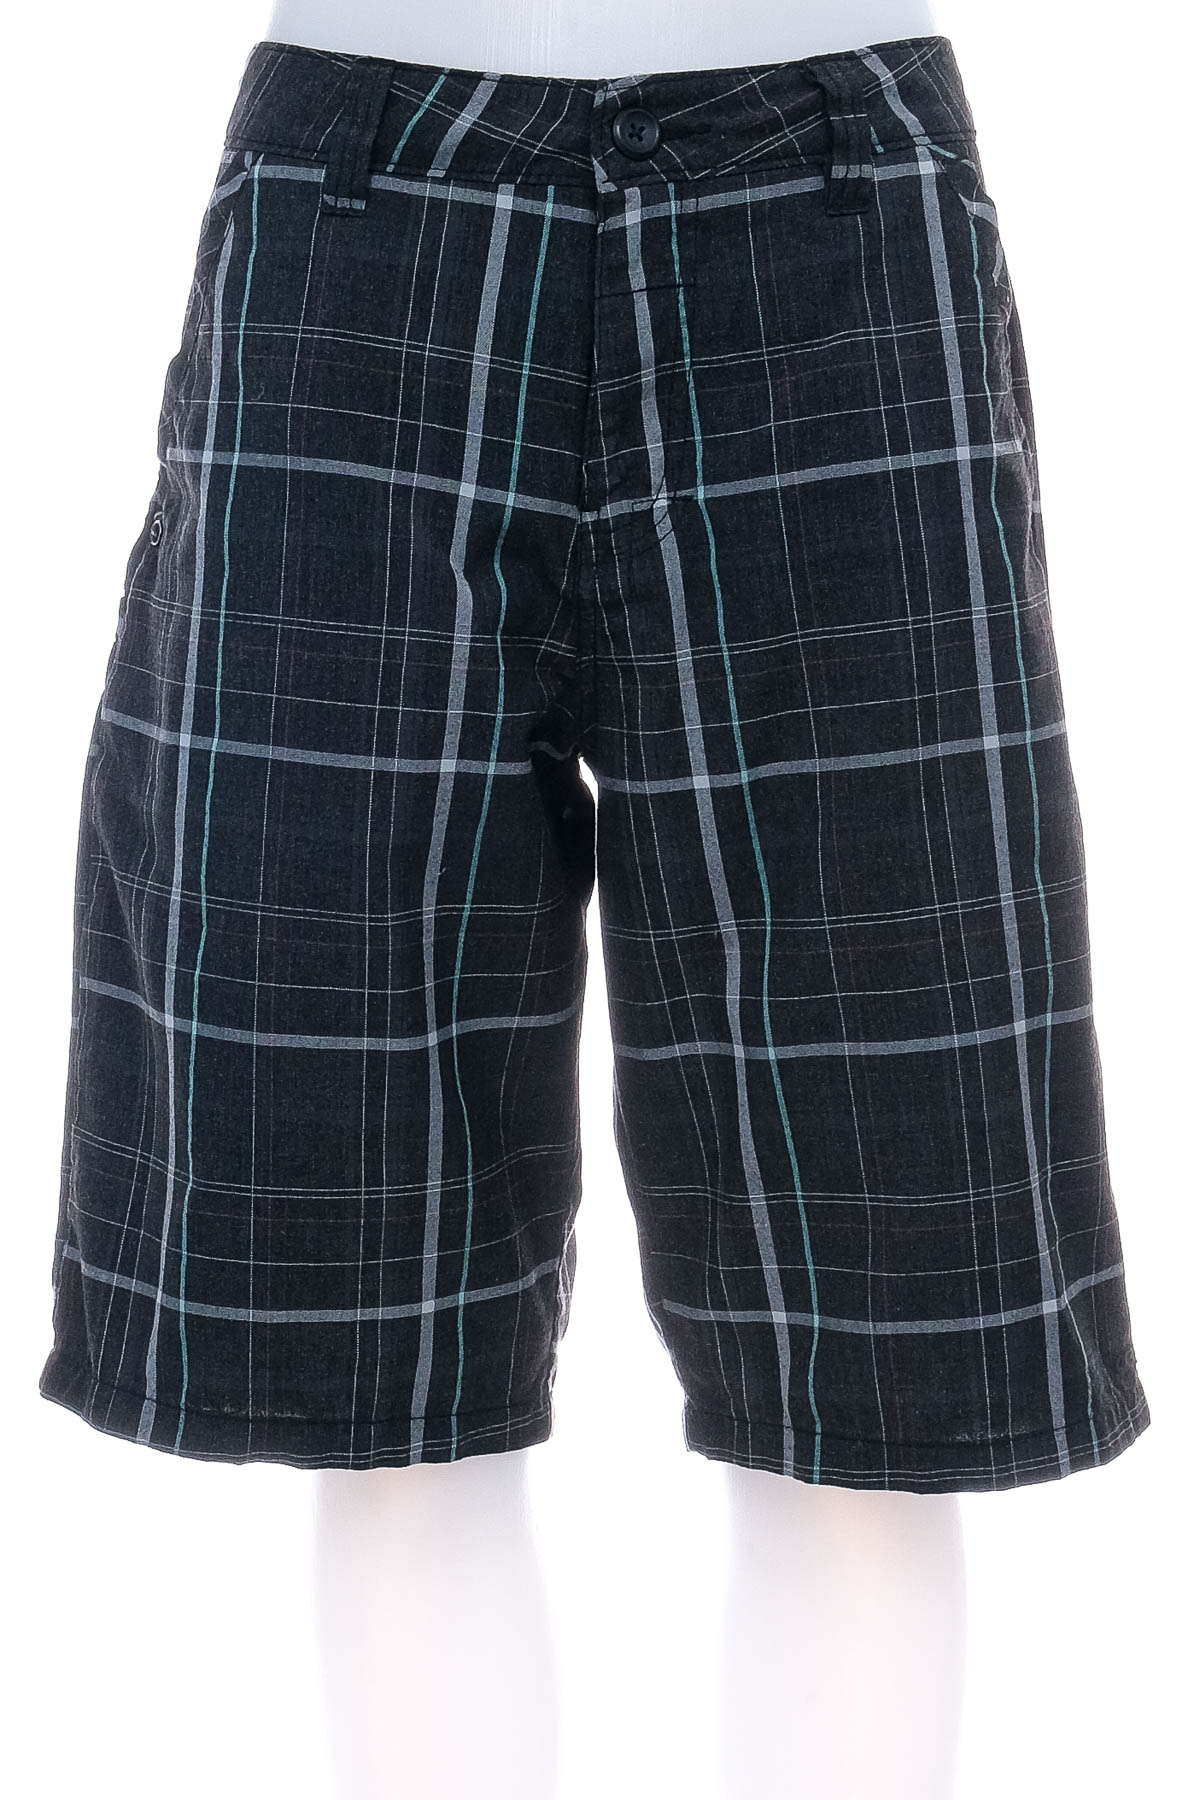 Men's shorts - O'NEILL - 0